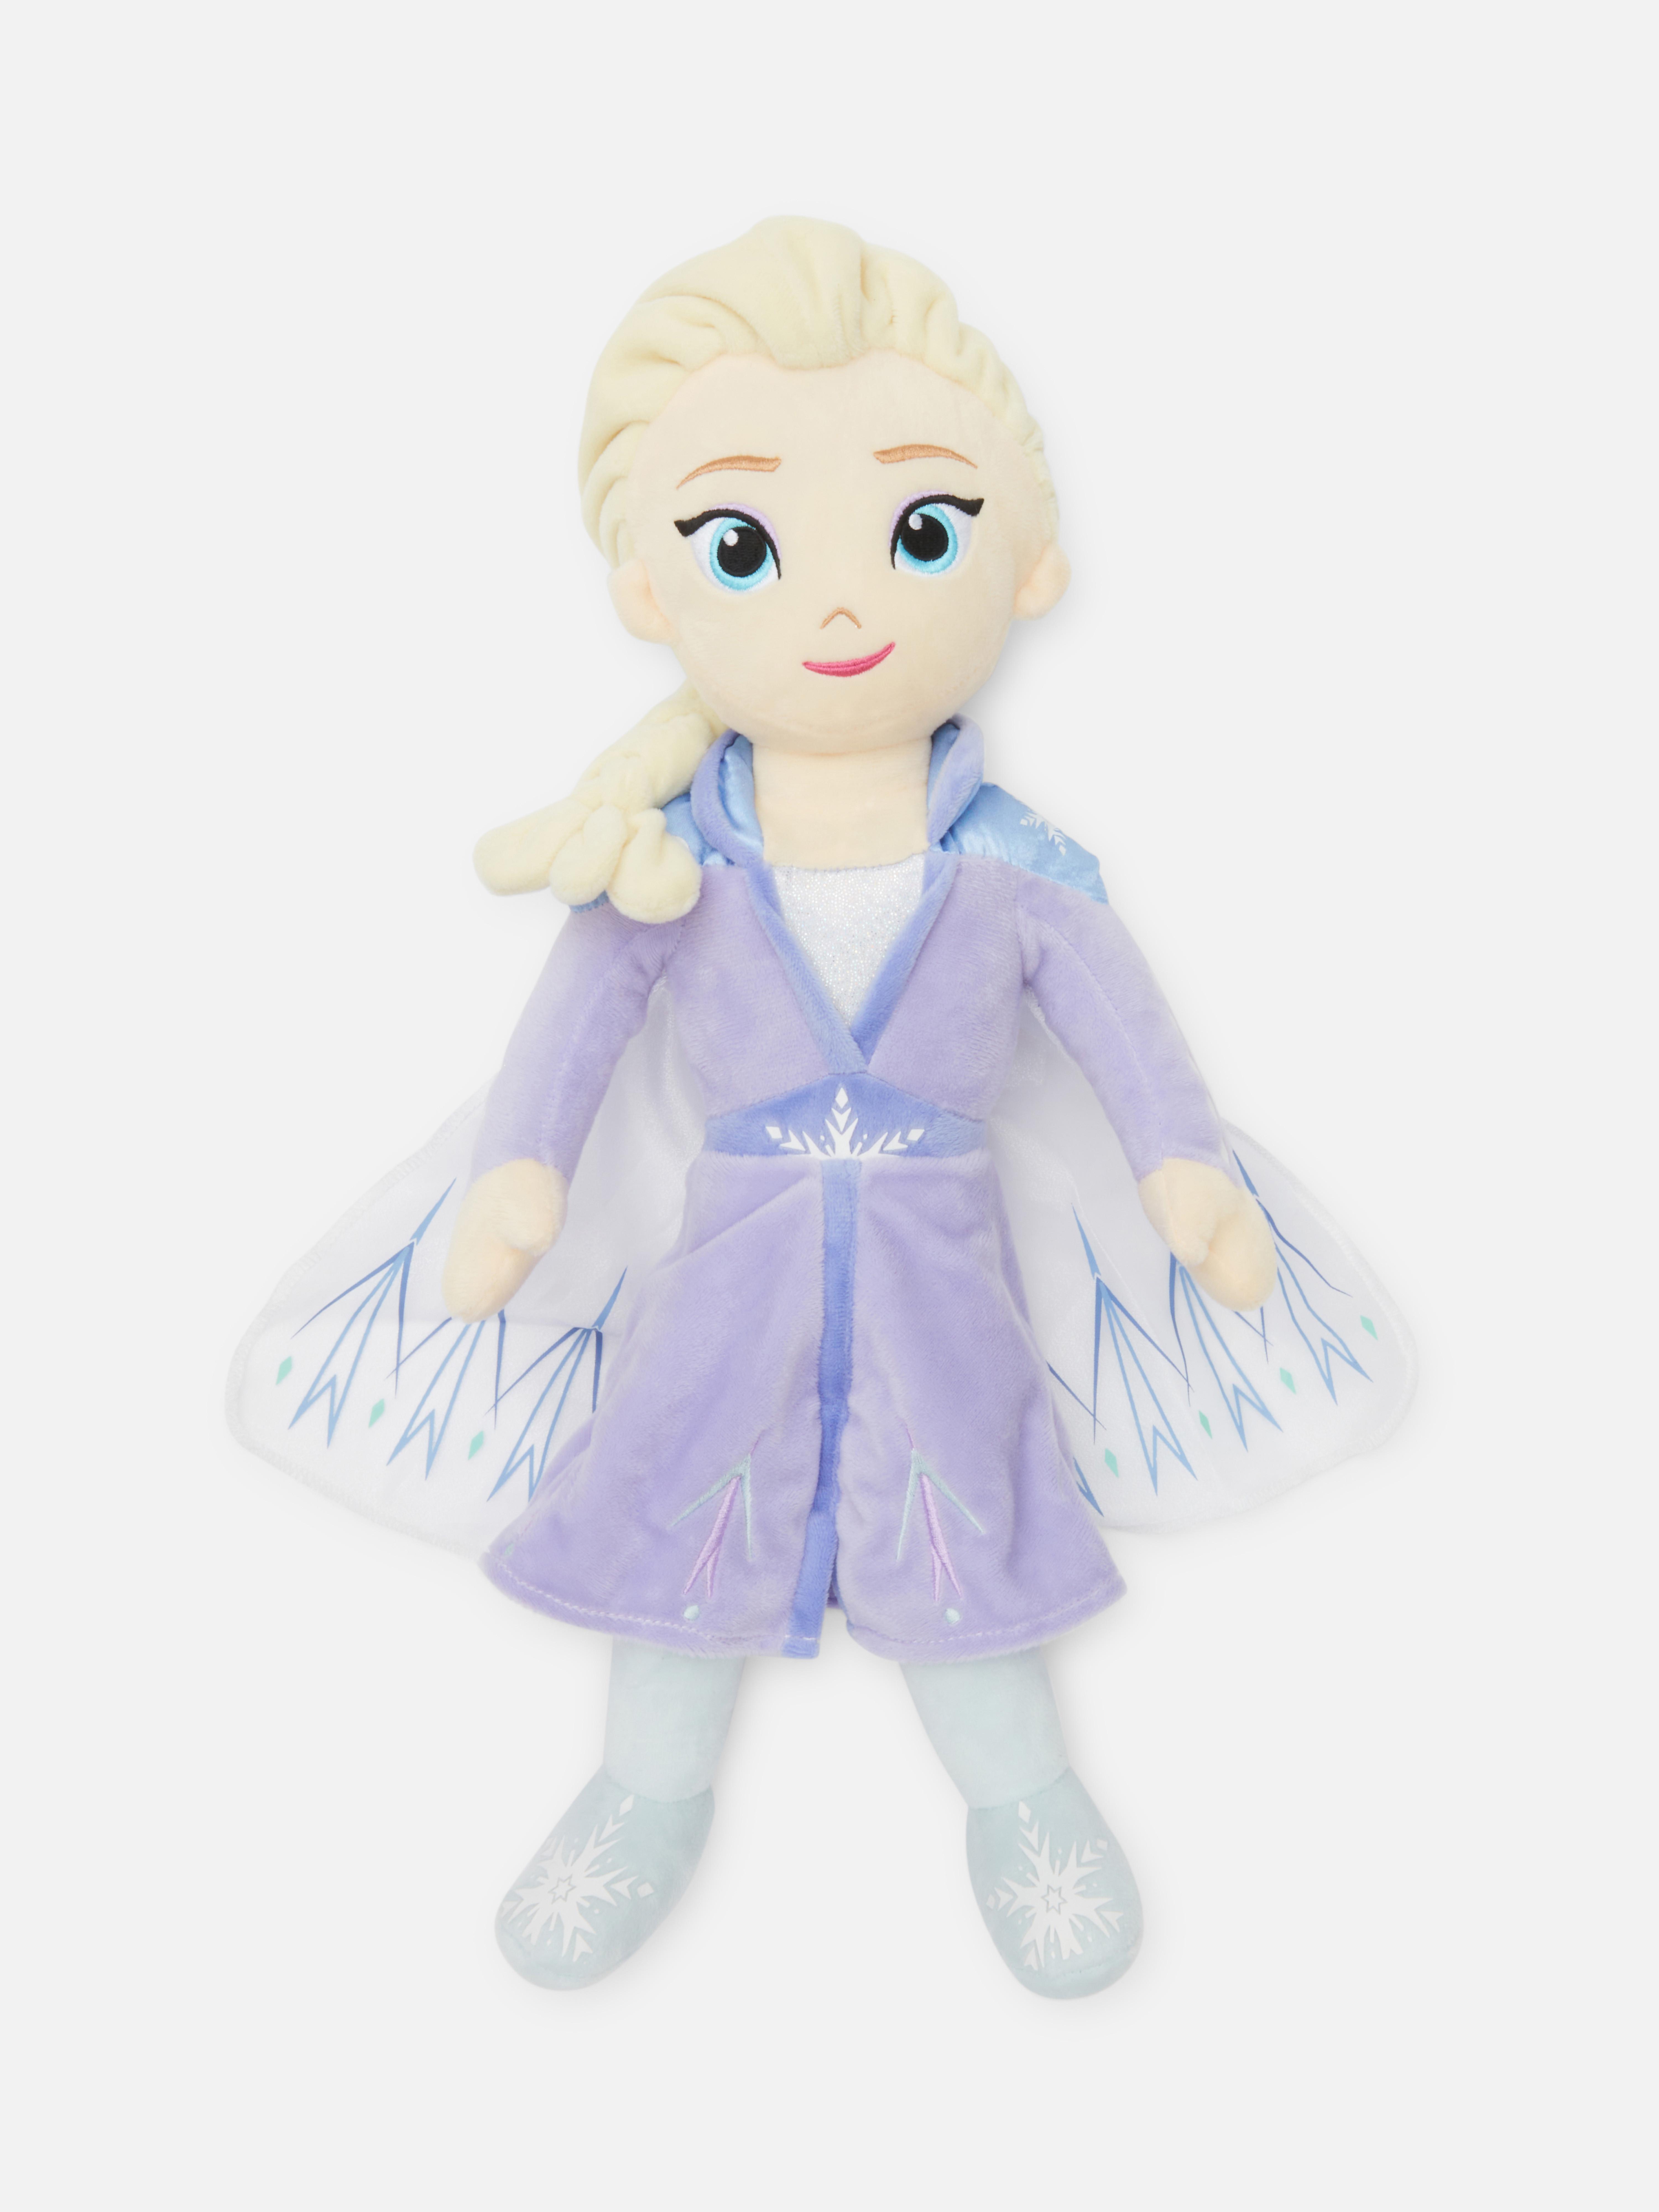 Brinquedo peluche Frozen Elsa Disney